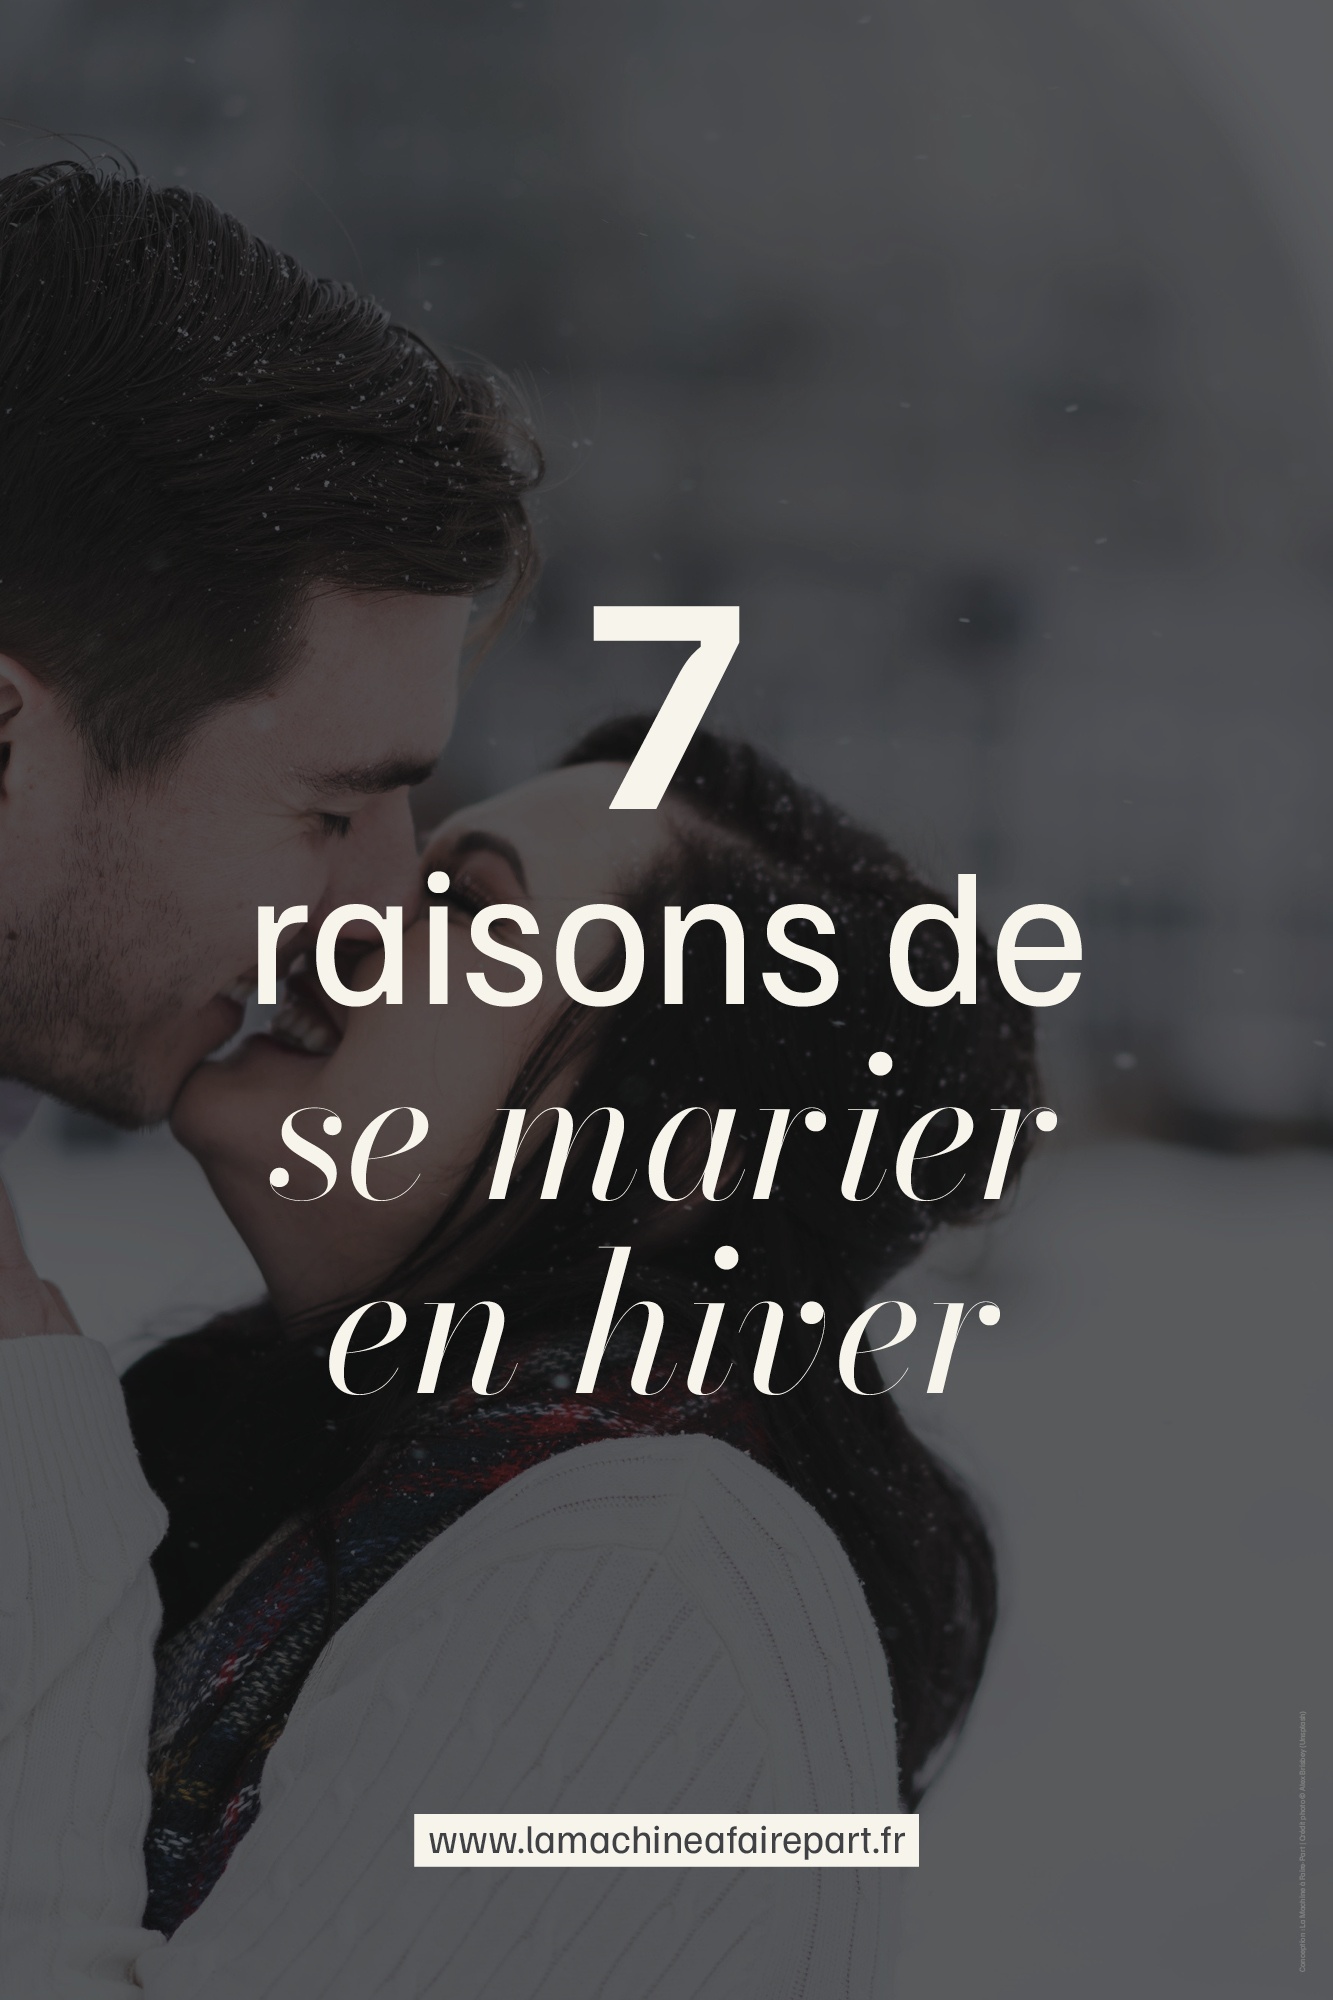 7 raisons de se marier en hiver